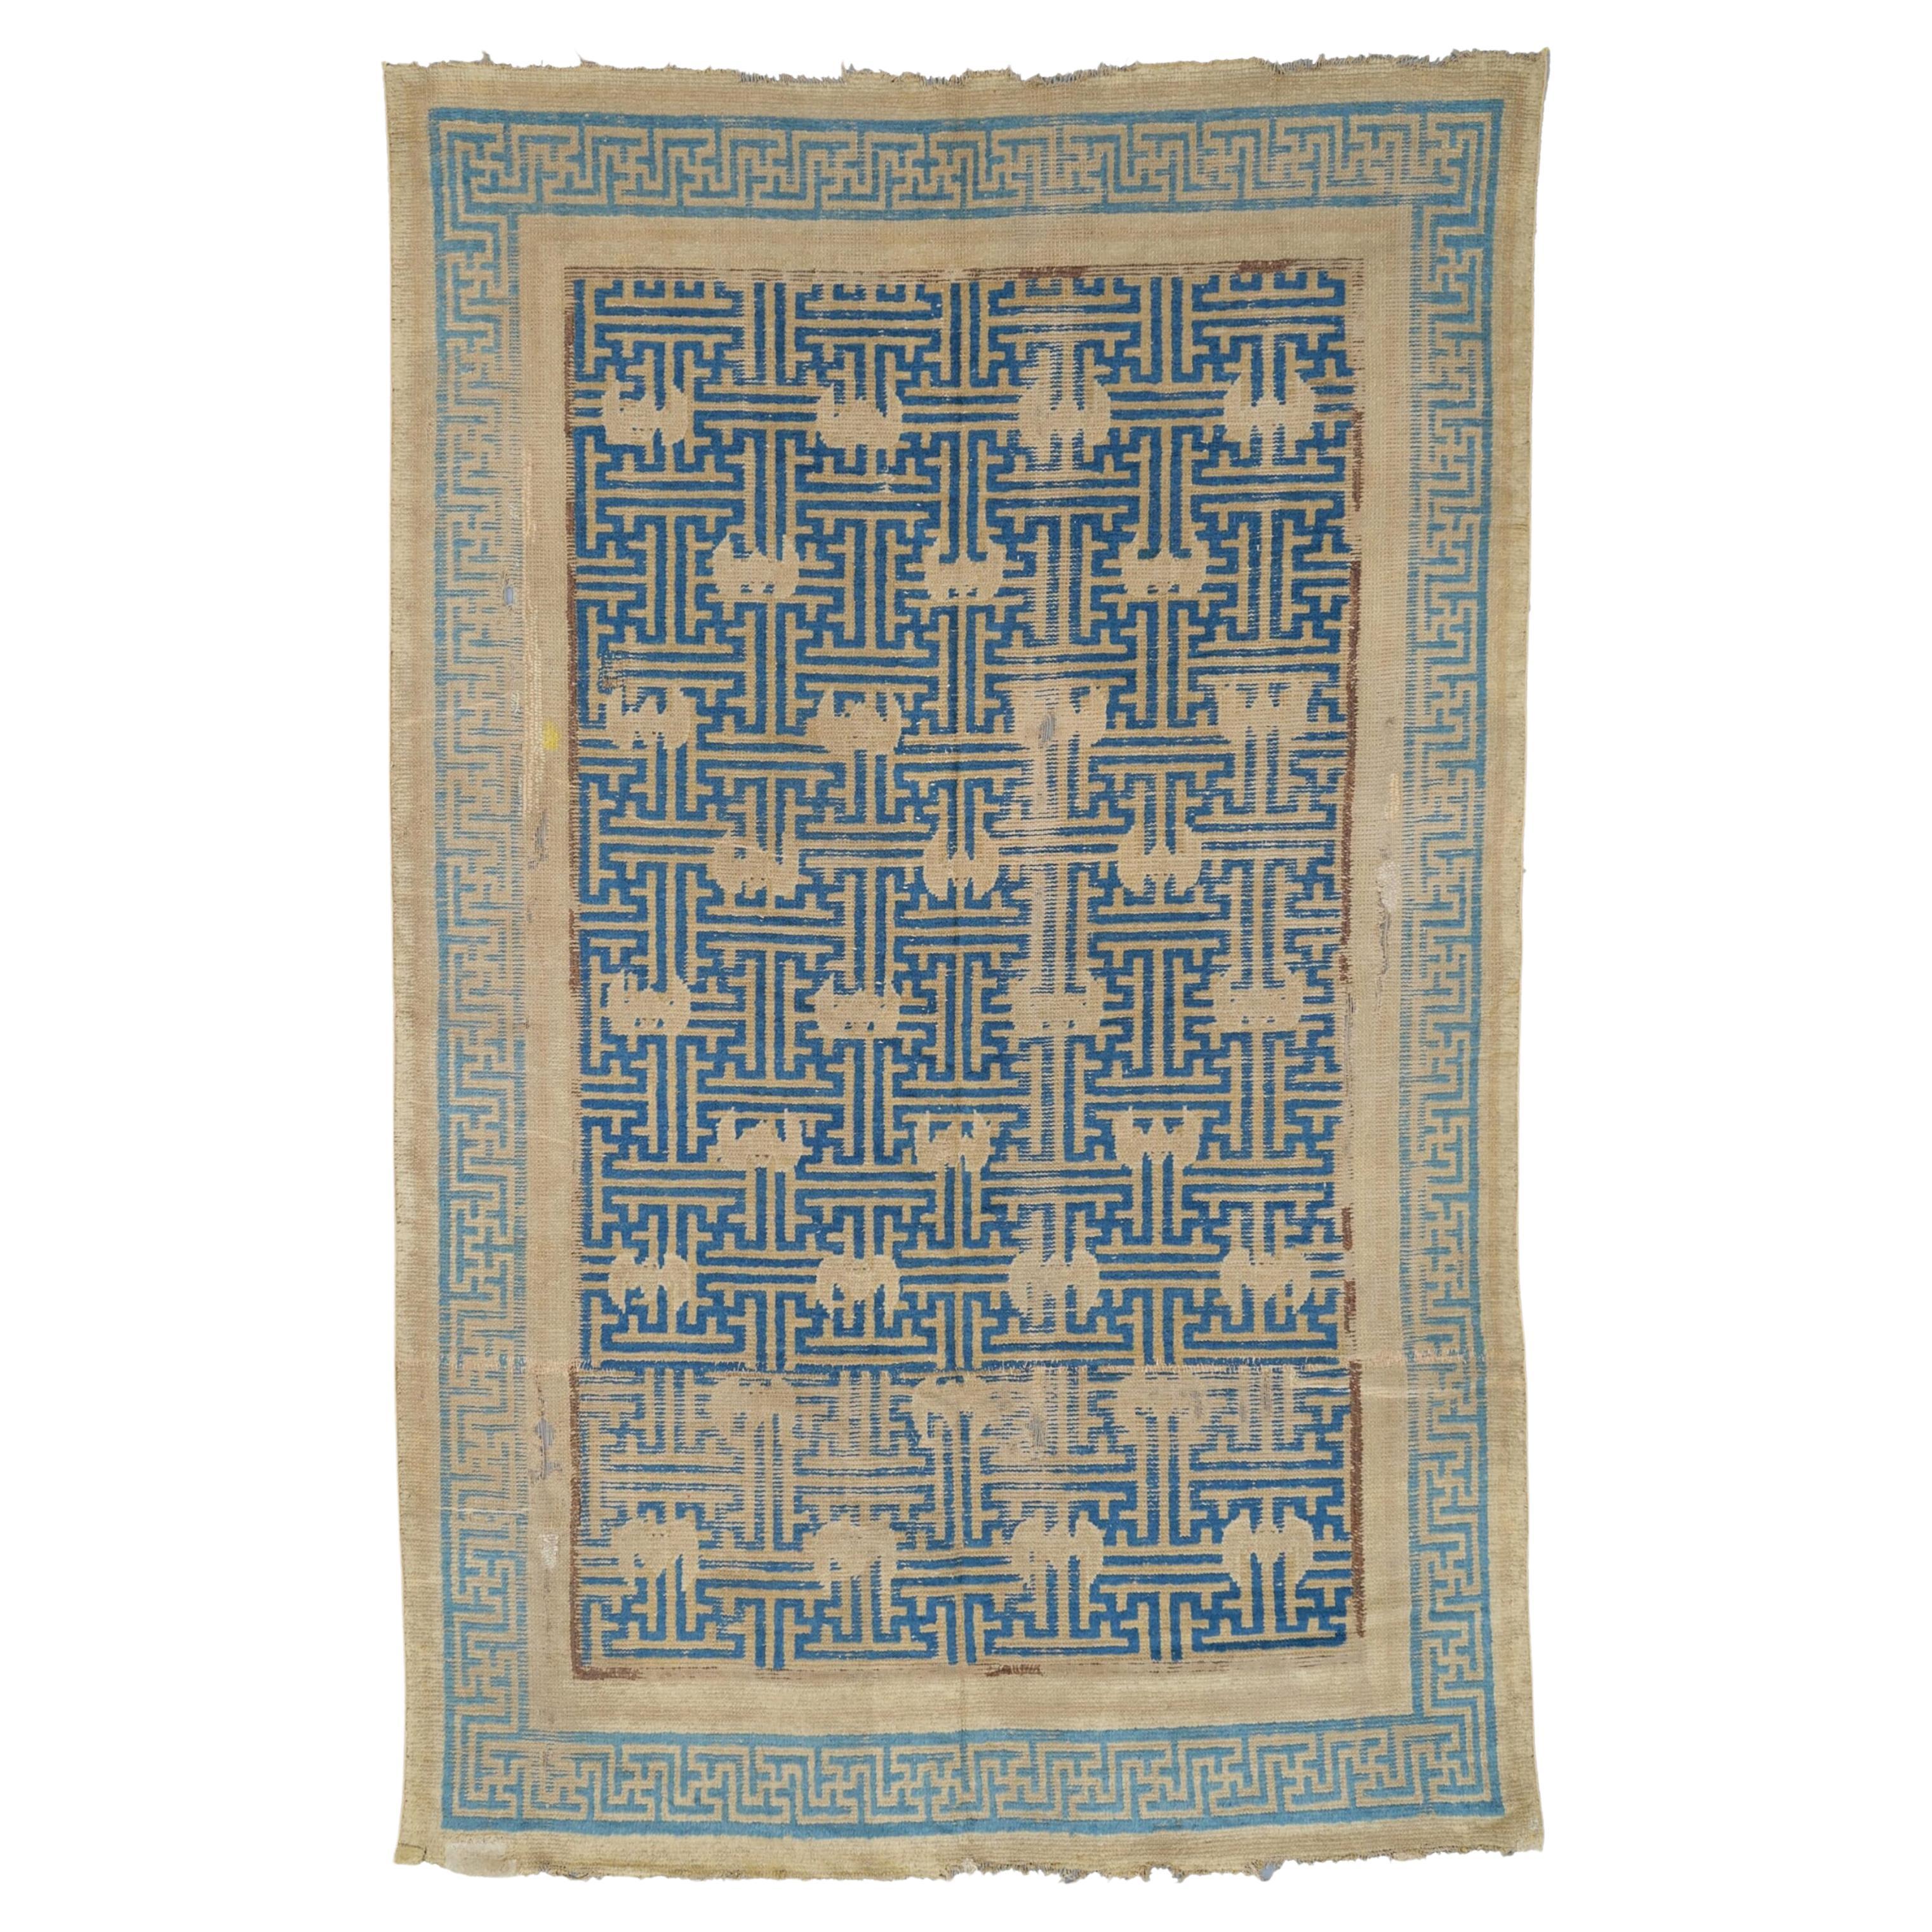 Fragment de tapis Ningxia du 17ème siècle - Fragment de tapis chinois ancien